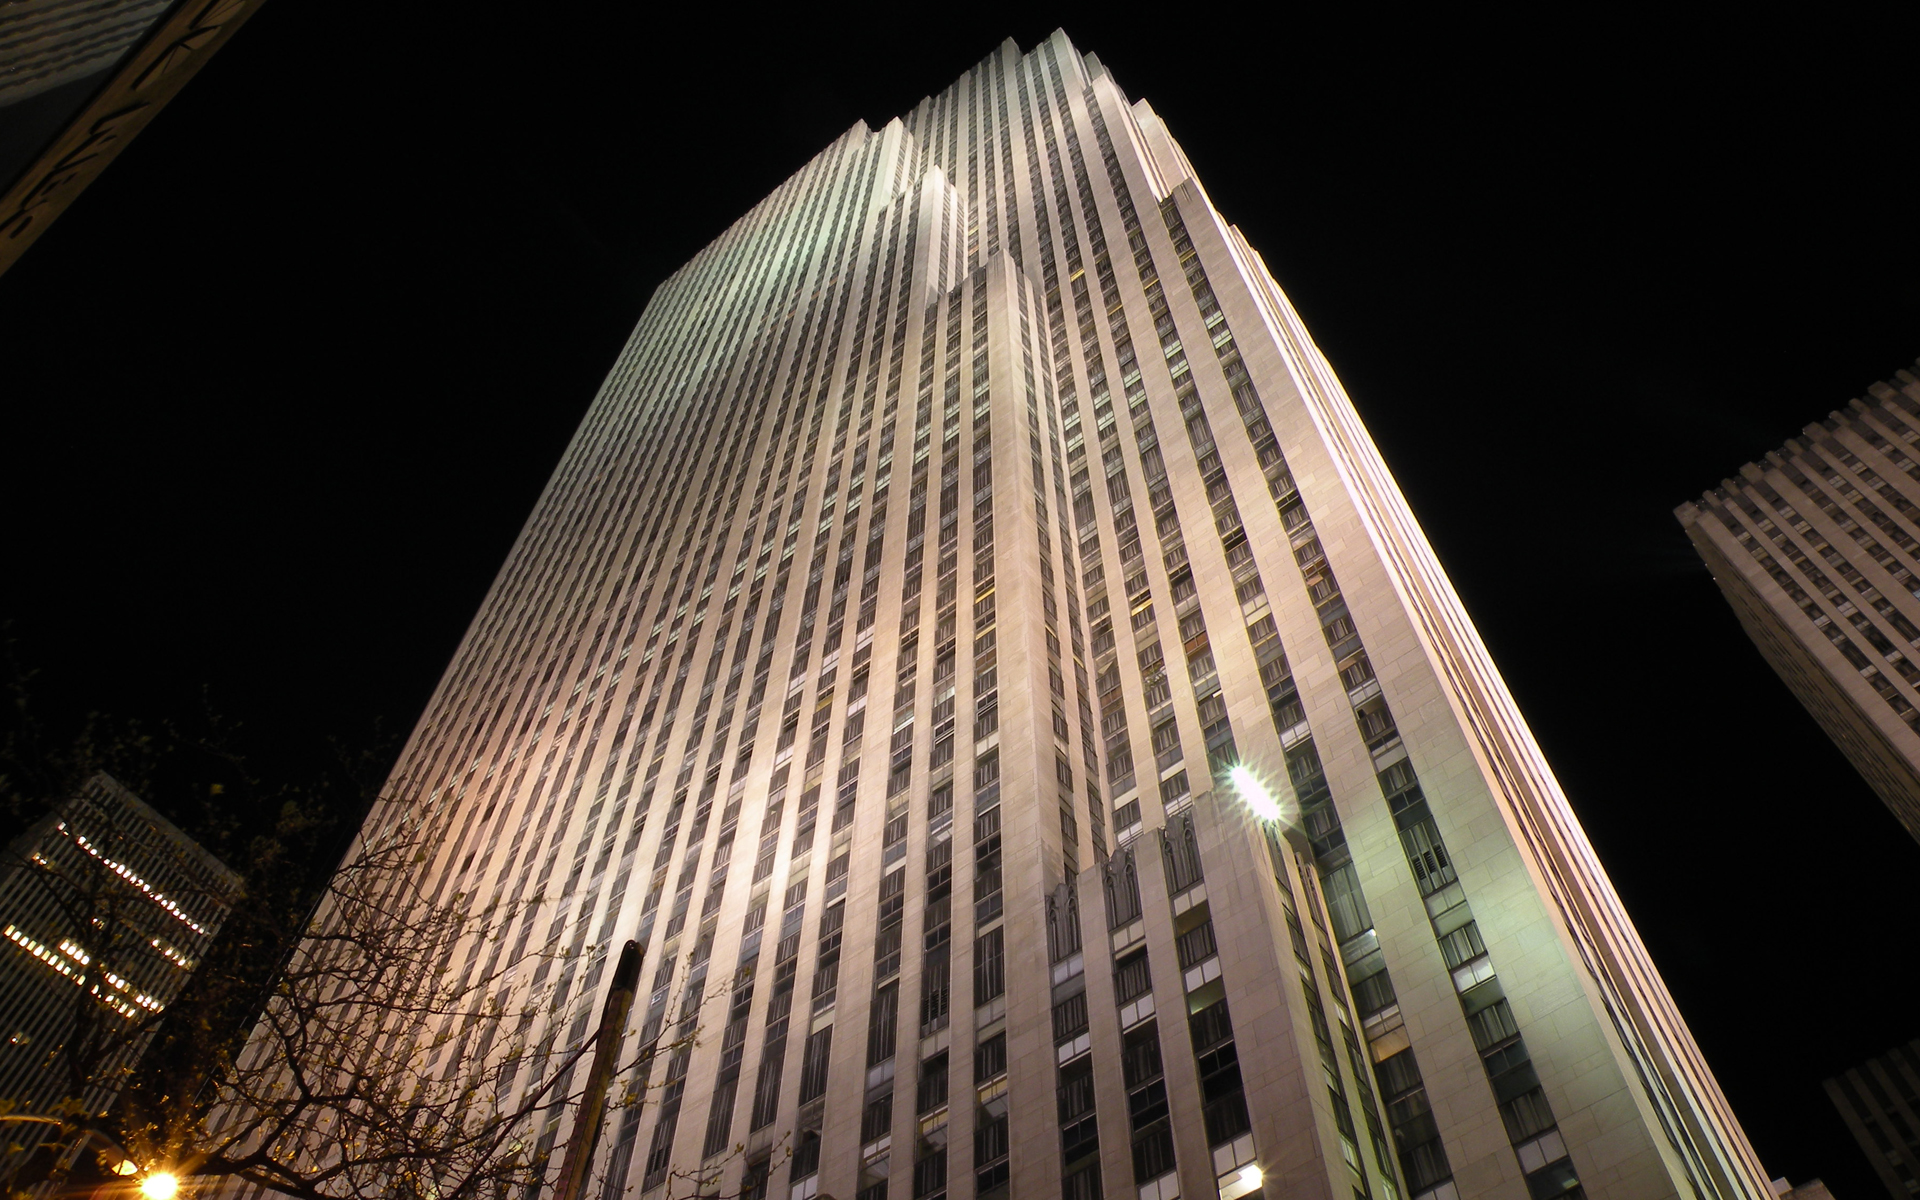 30 Rockefeller Plaza (file / credit: Evan Bindelglass / CBSNewYork)